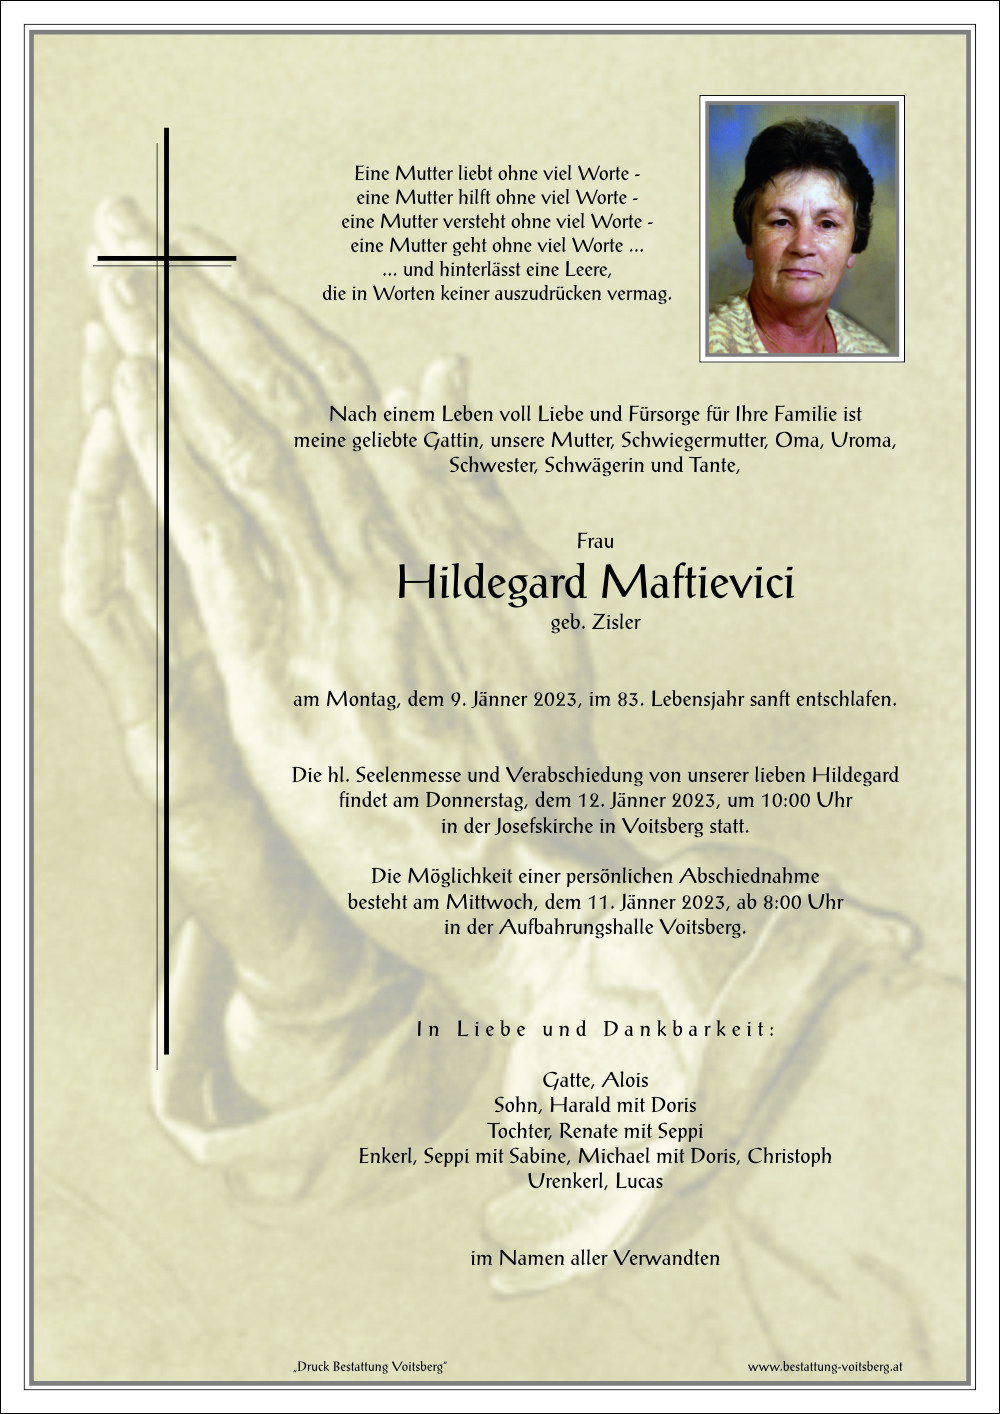 Hildegard Maftievici